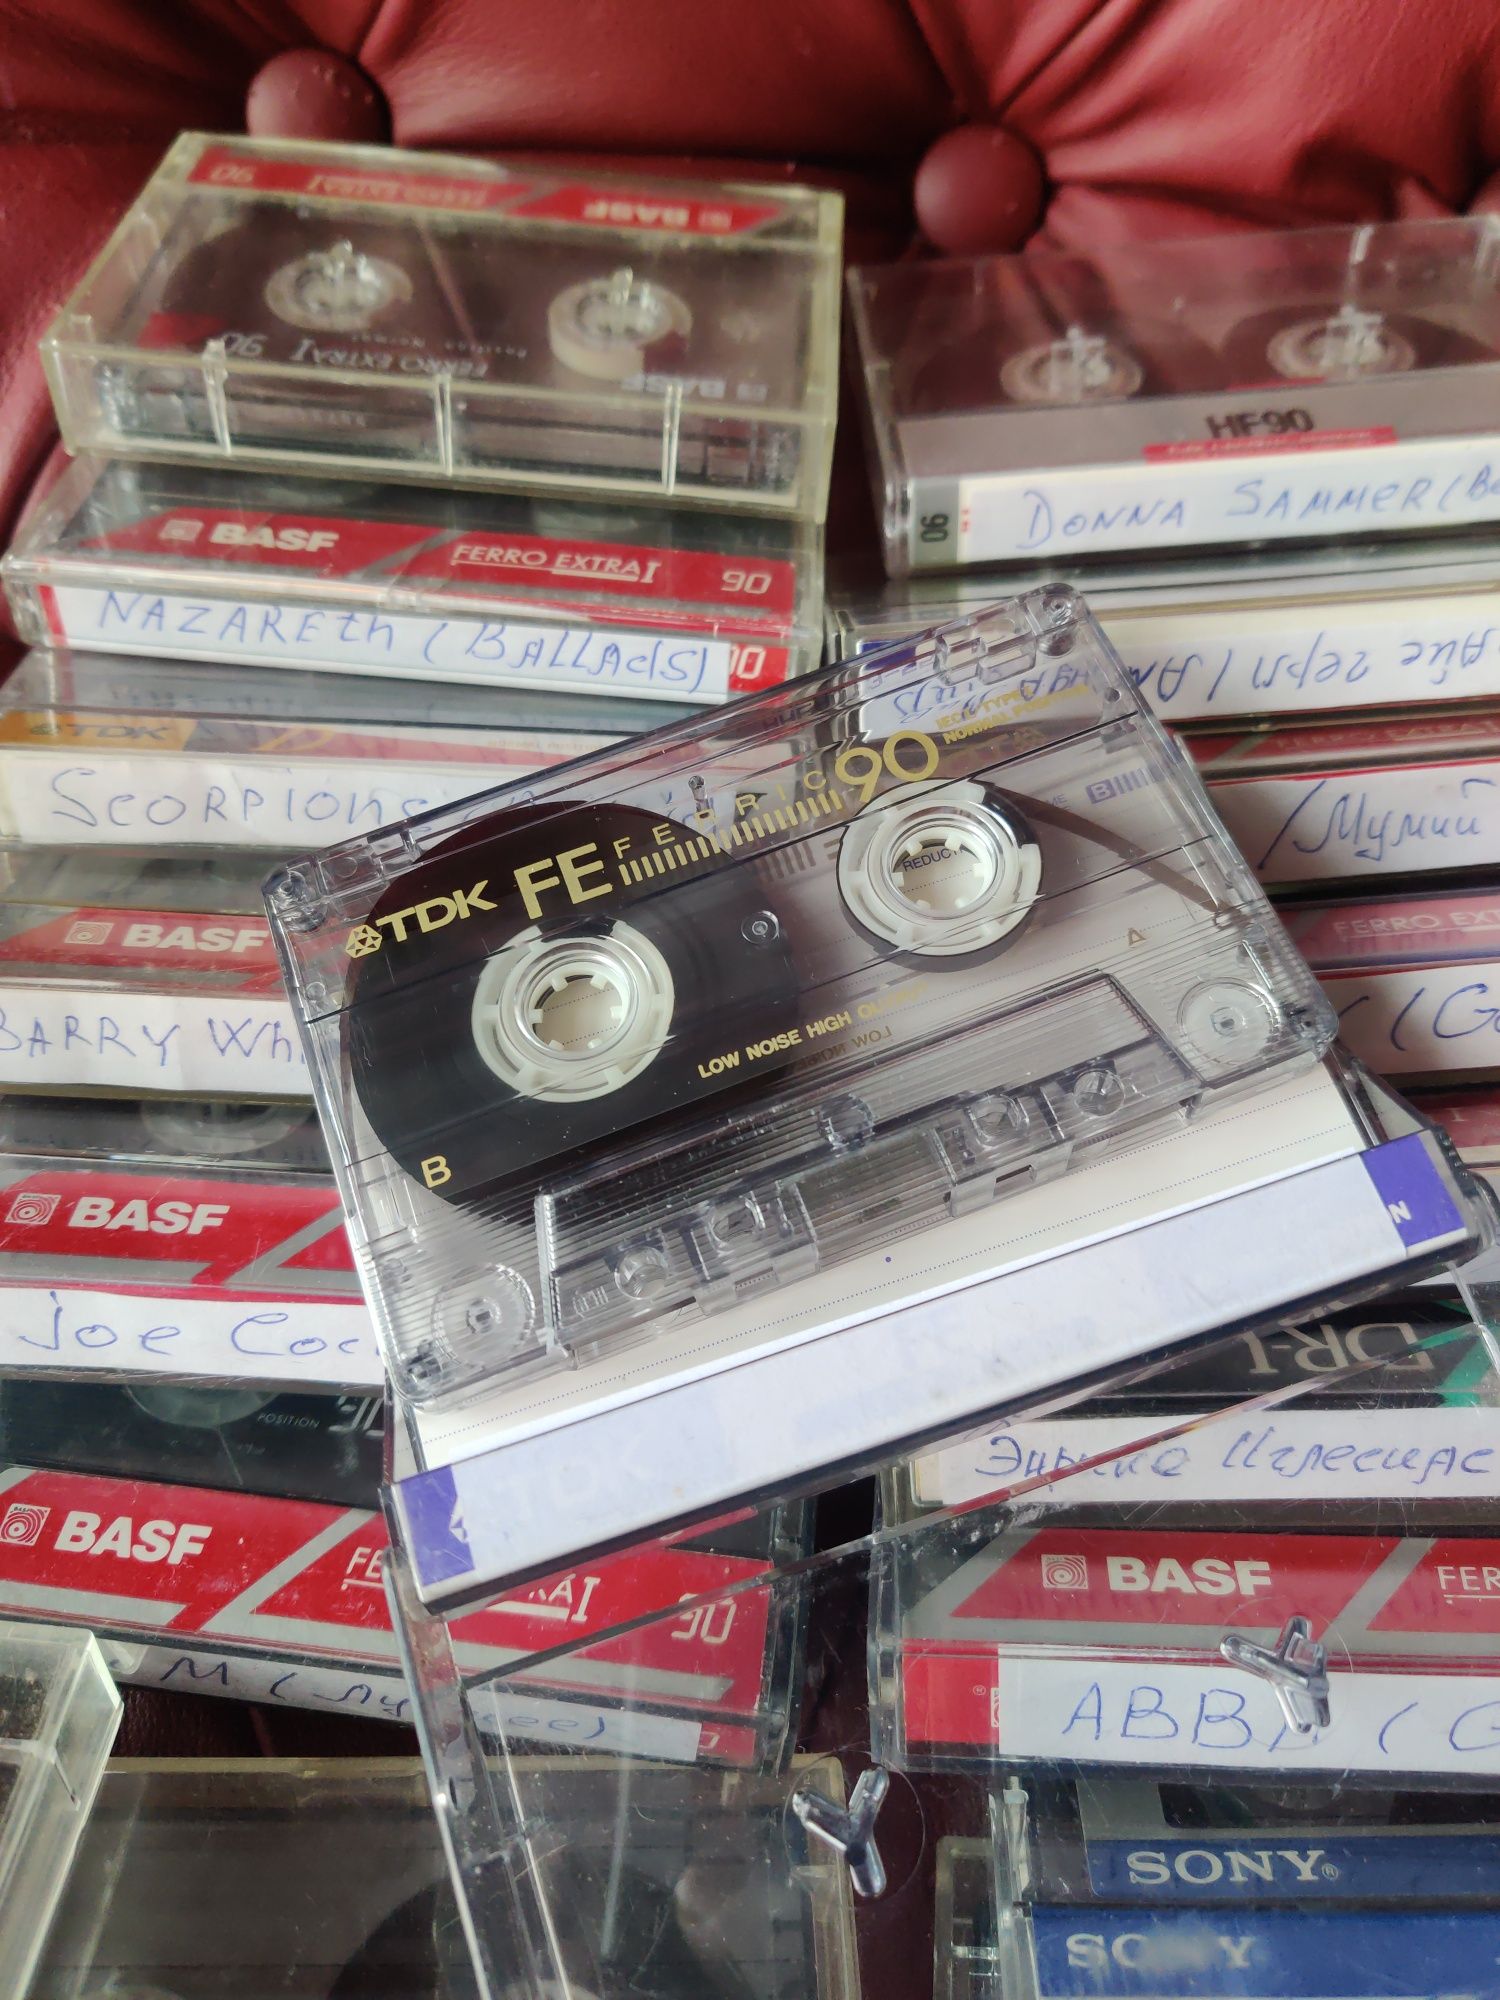 Аудио касеты BASF и другие